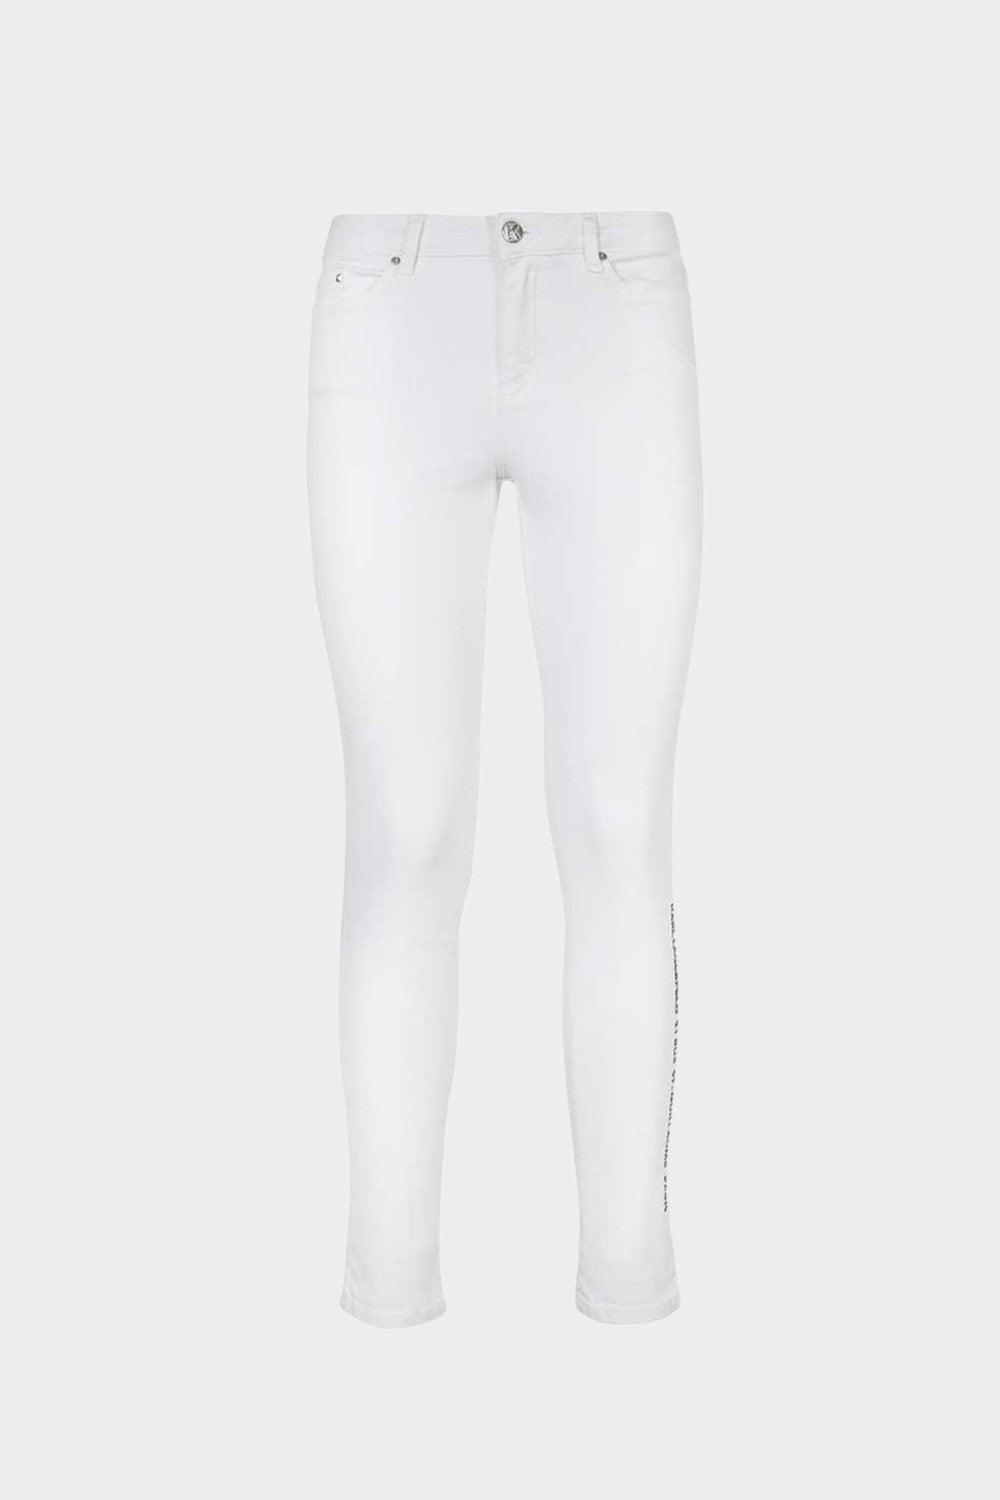 סקיני ג'ינס לנשים הדפס לוגו בצד KARL LAGERFELD Vendome online | ונדום .